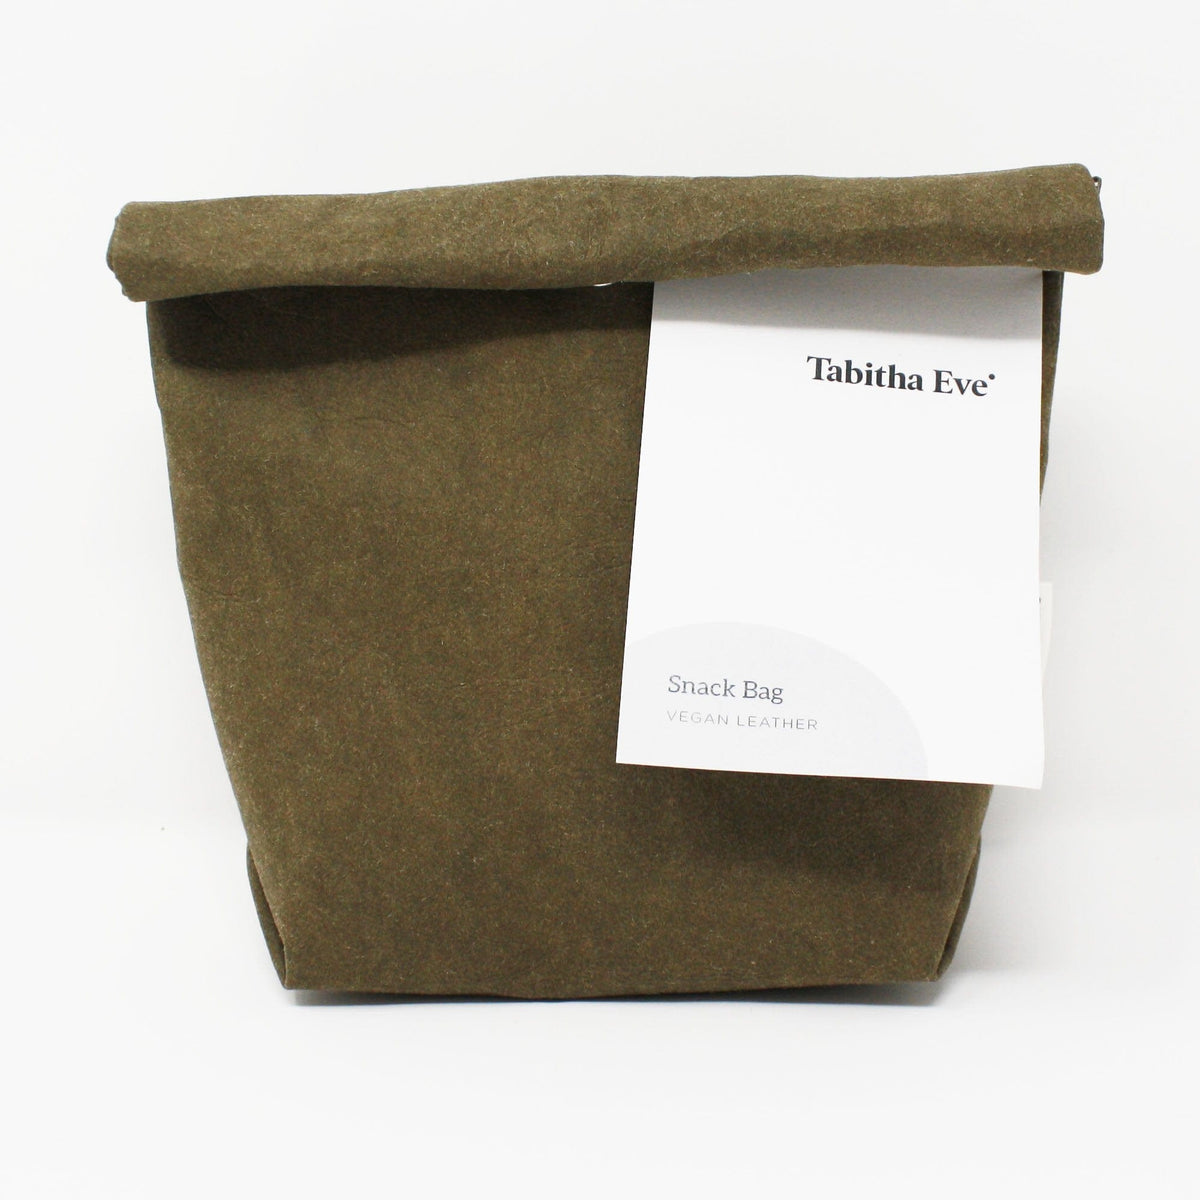 Tabitha Eve bark Vleather Snack Bag